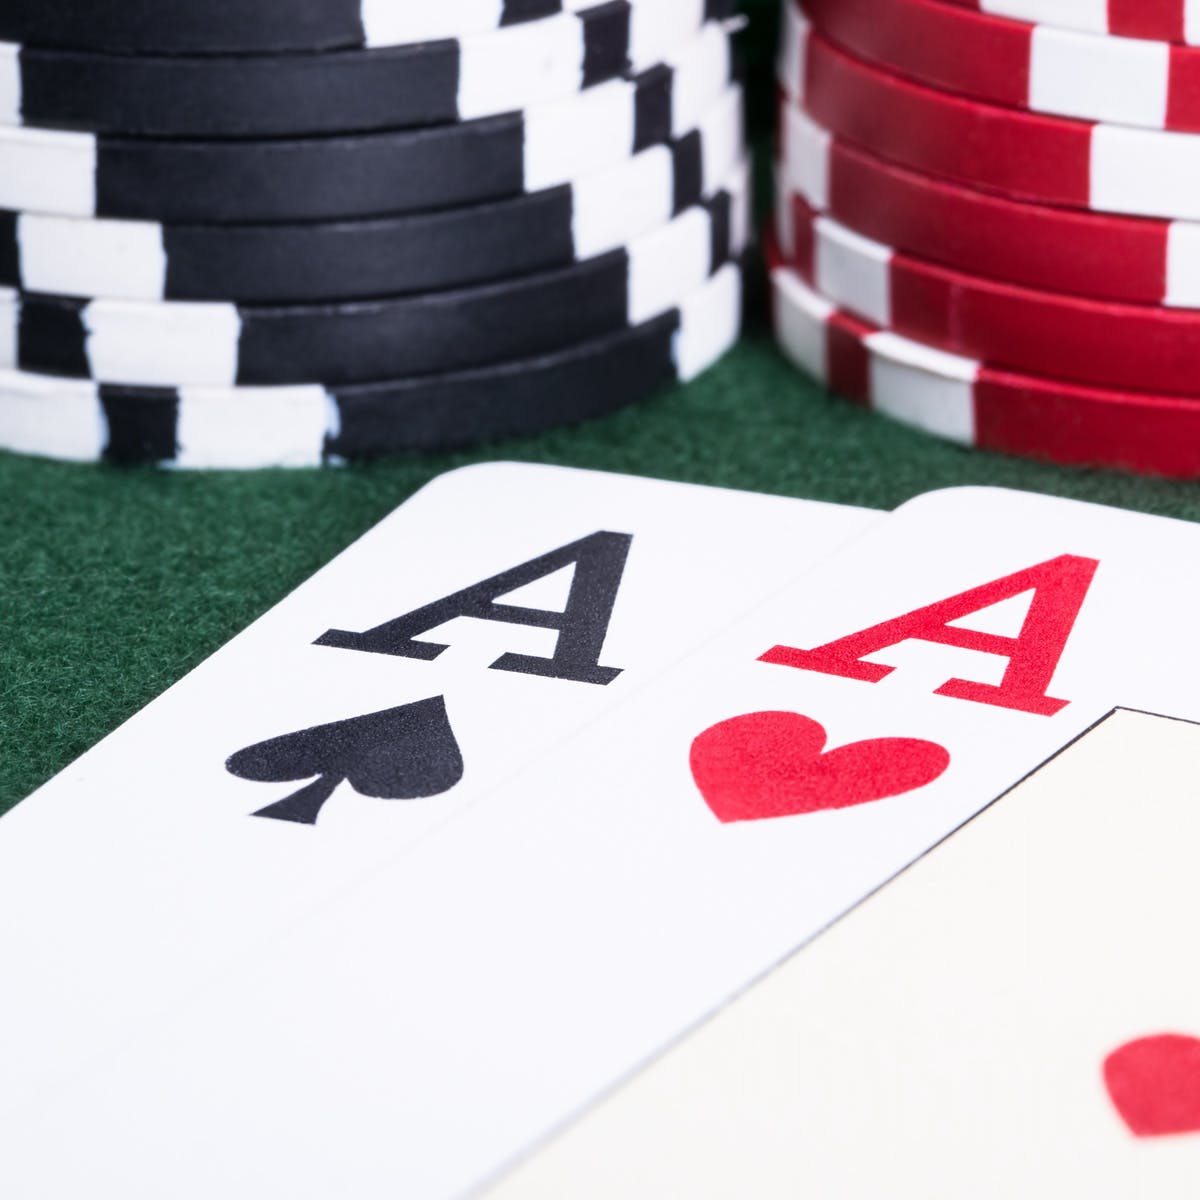 poker gambling